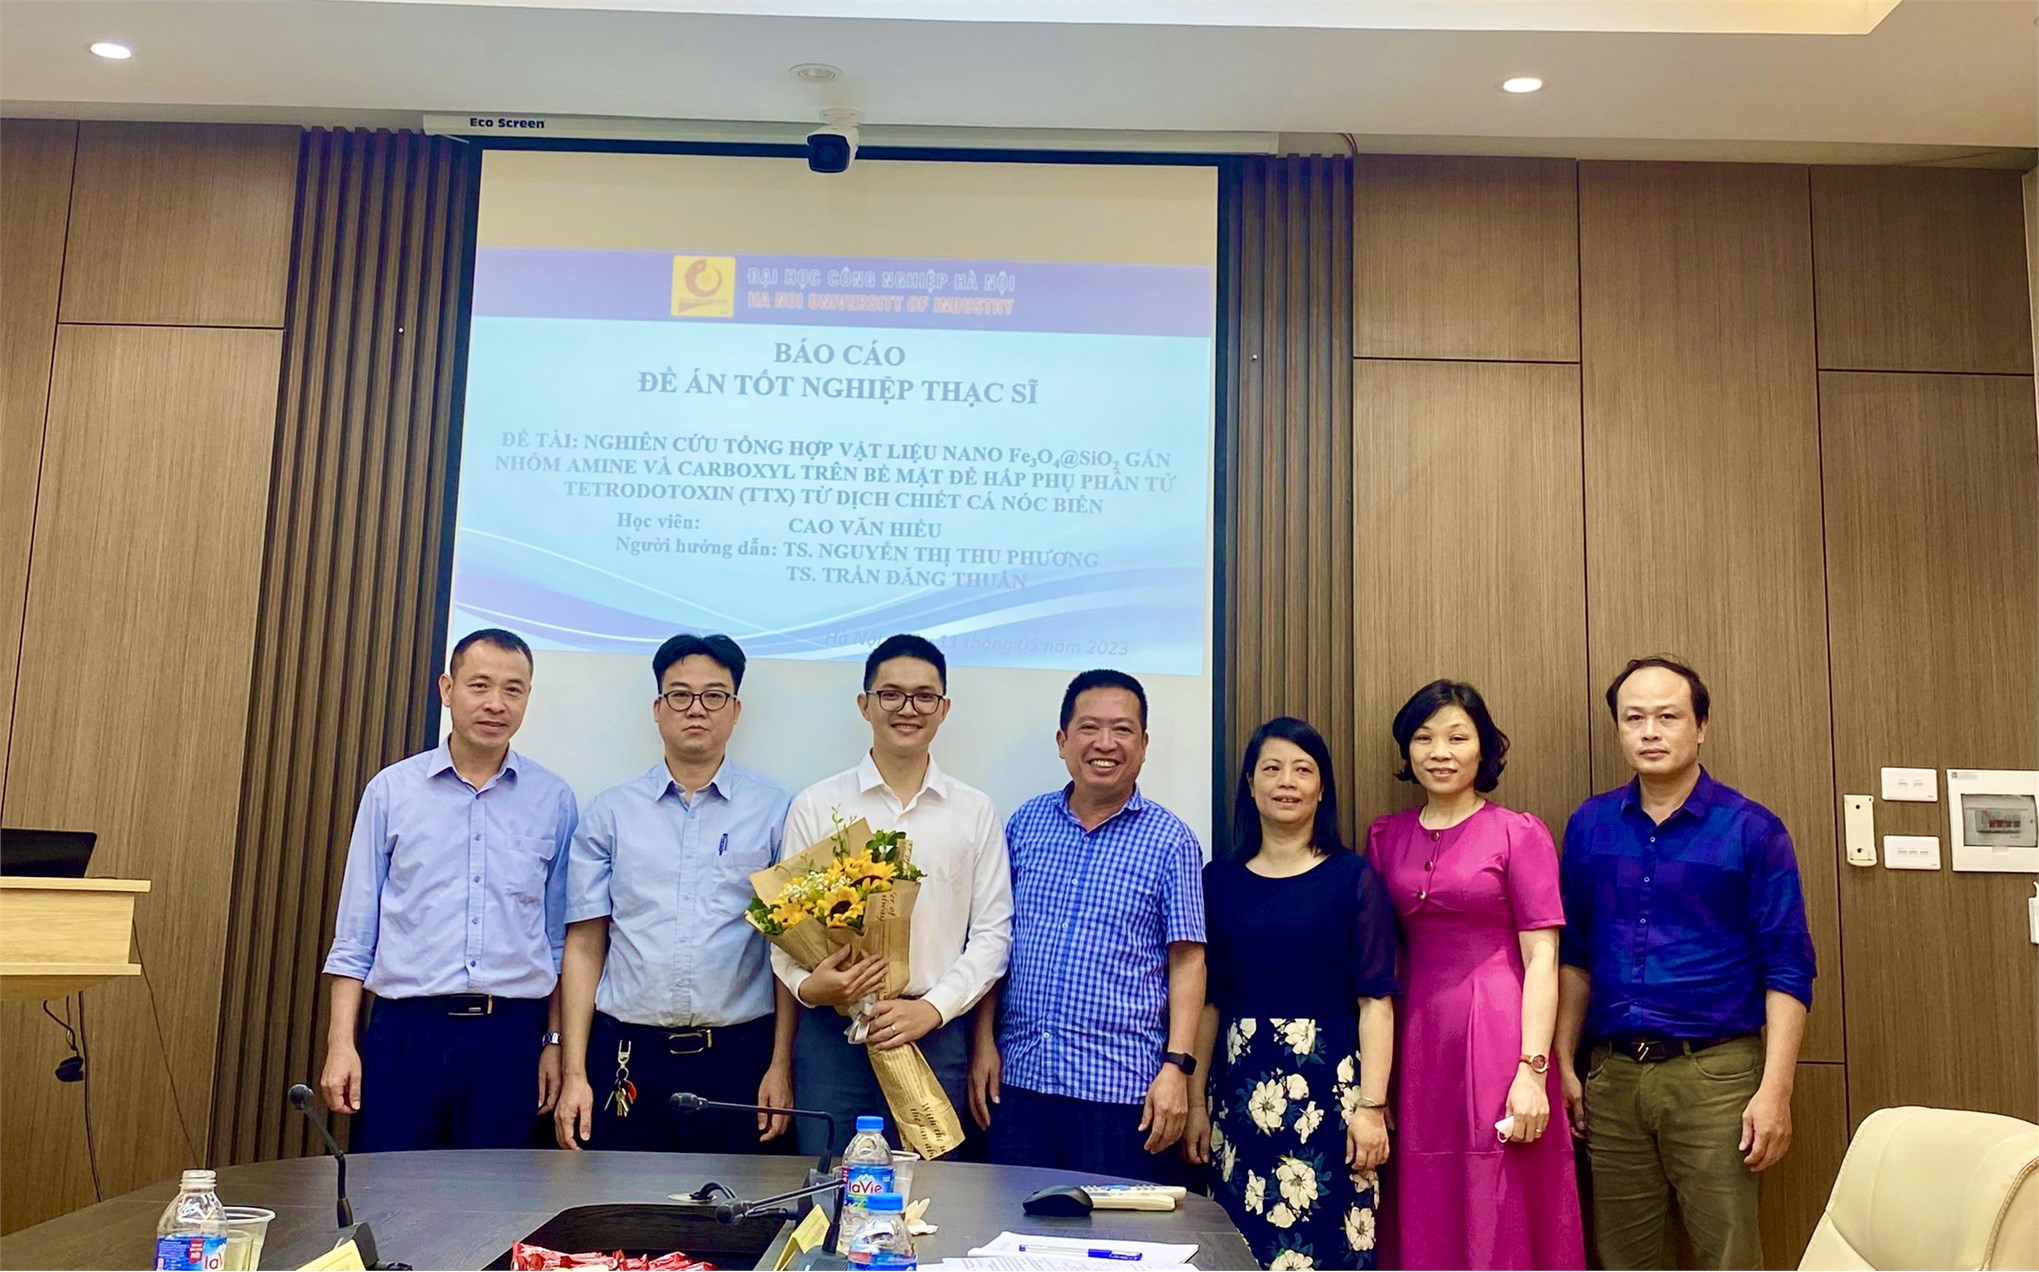 Trường Đại học Công nghiệp Hà Nội, tổ chức bảo vệ đề án tốt nghiệp cho học viên cao học ngành Kỹ thuật Hóa học – Khóa 11.